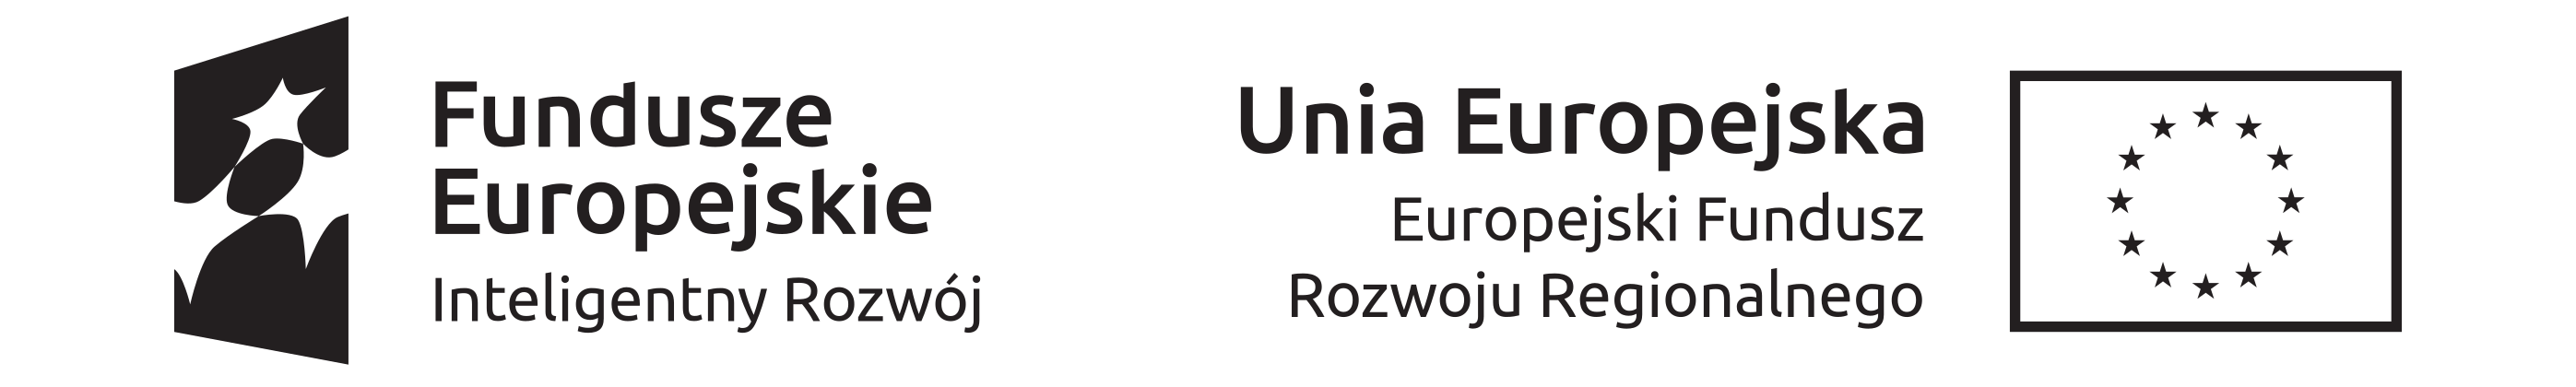 unia europejska logo